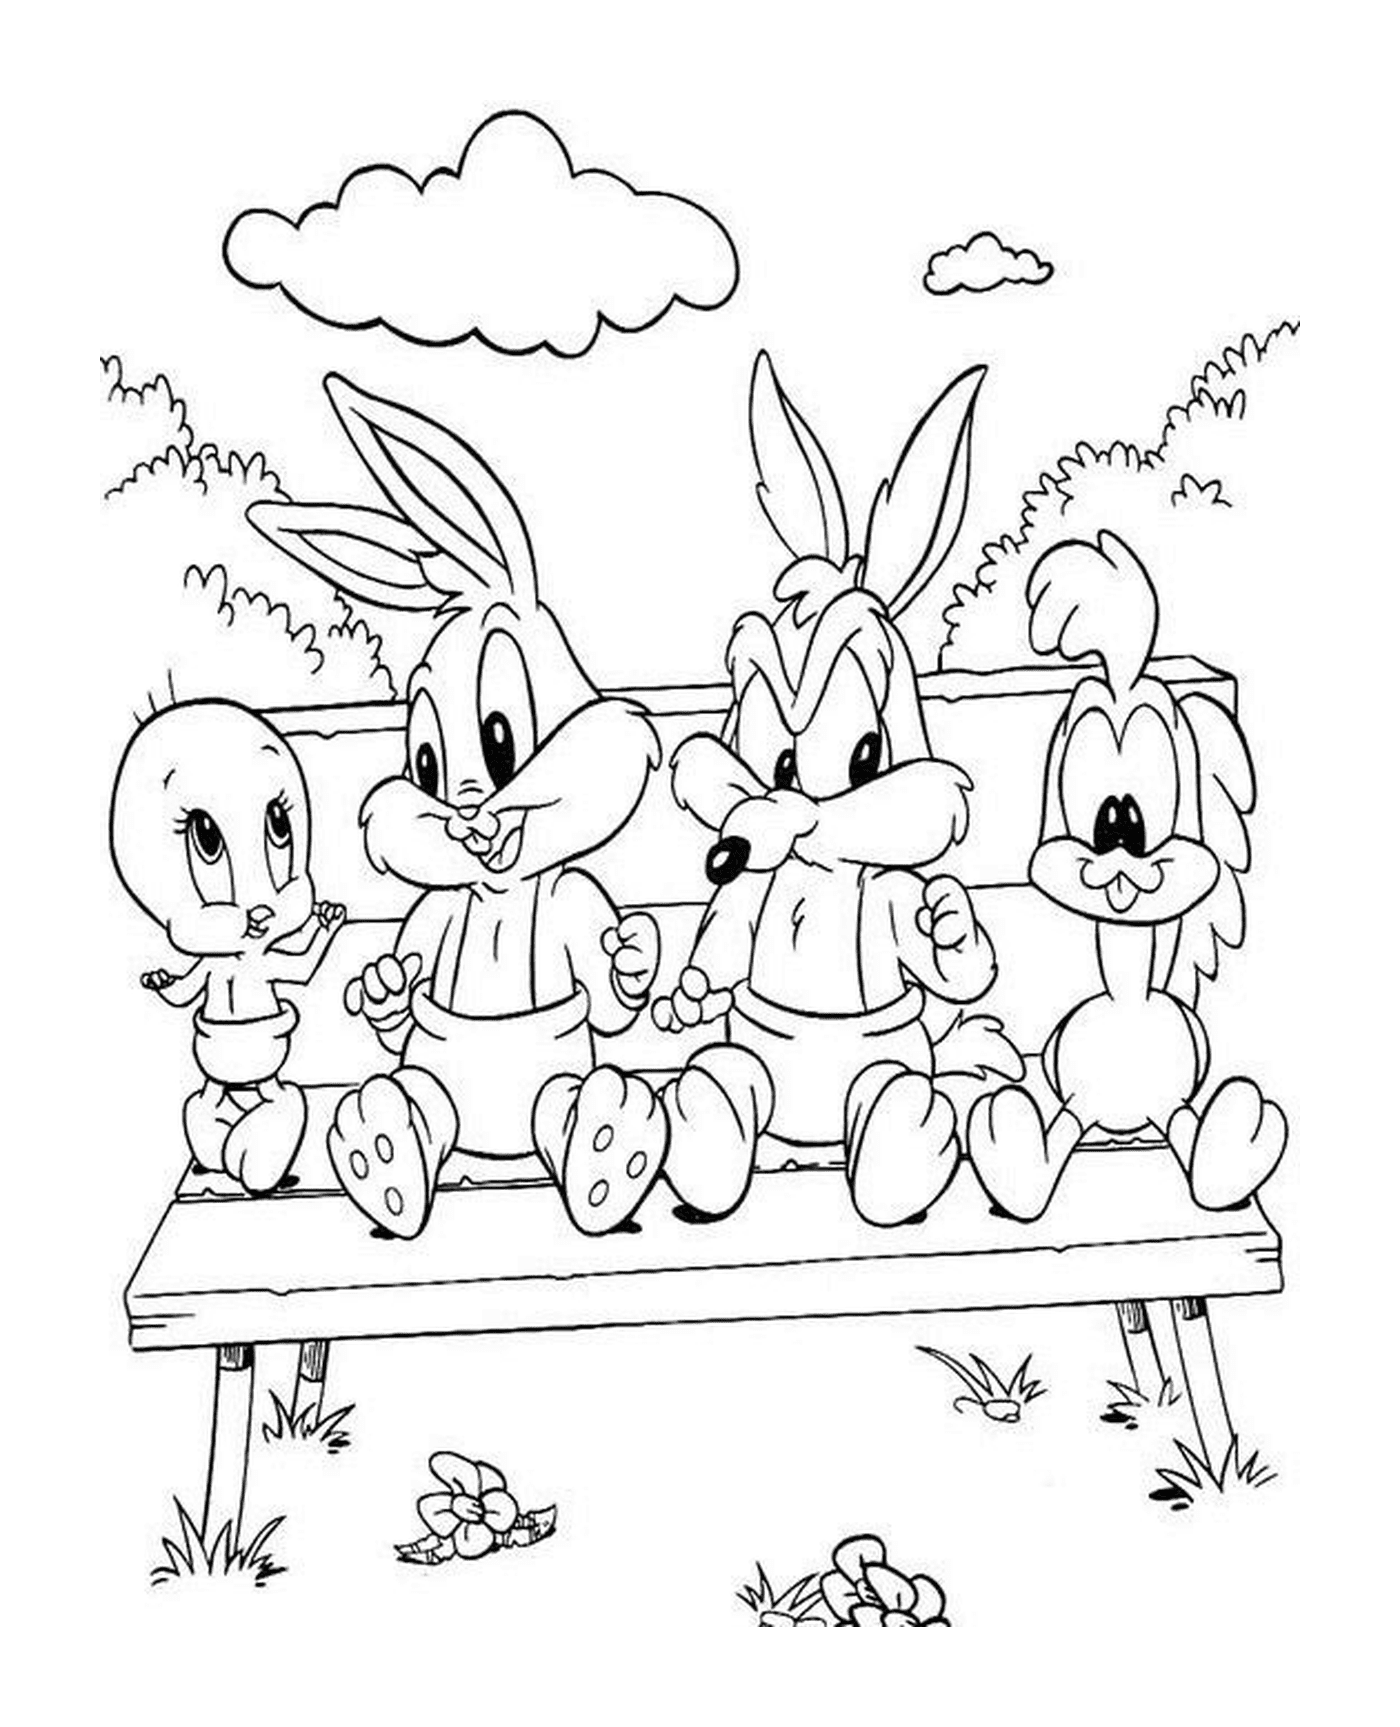   Les Looney Tunes assis sur un banc 